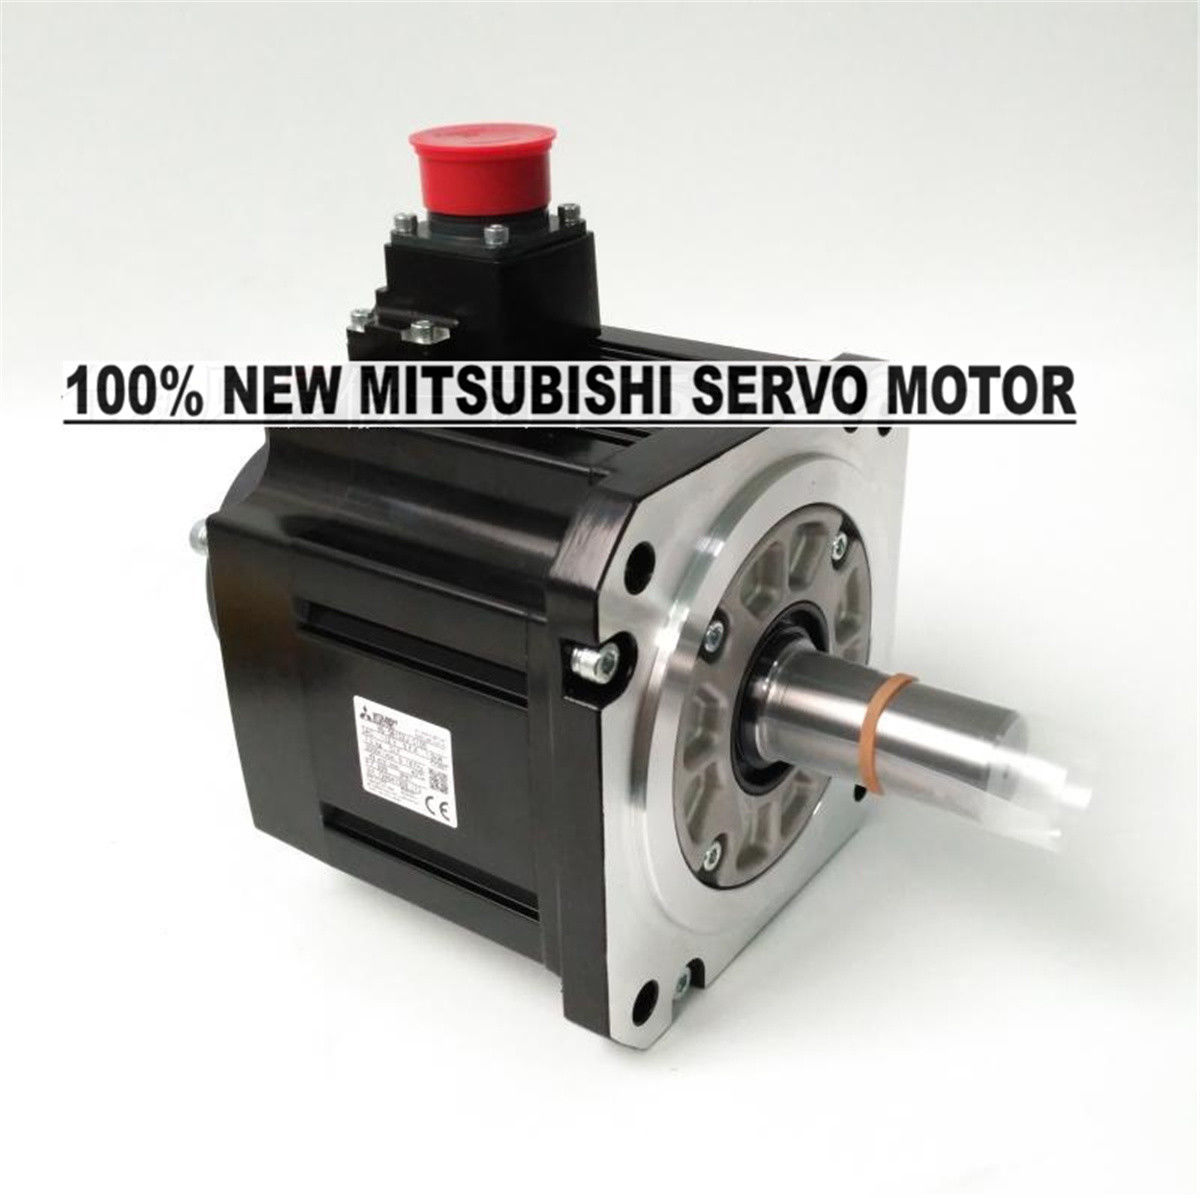 Brand NEW Mitsubishi Servo Motor HG-SN152J-S100 in box HGSN152JS100 - Click Image to Close